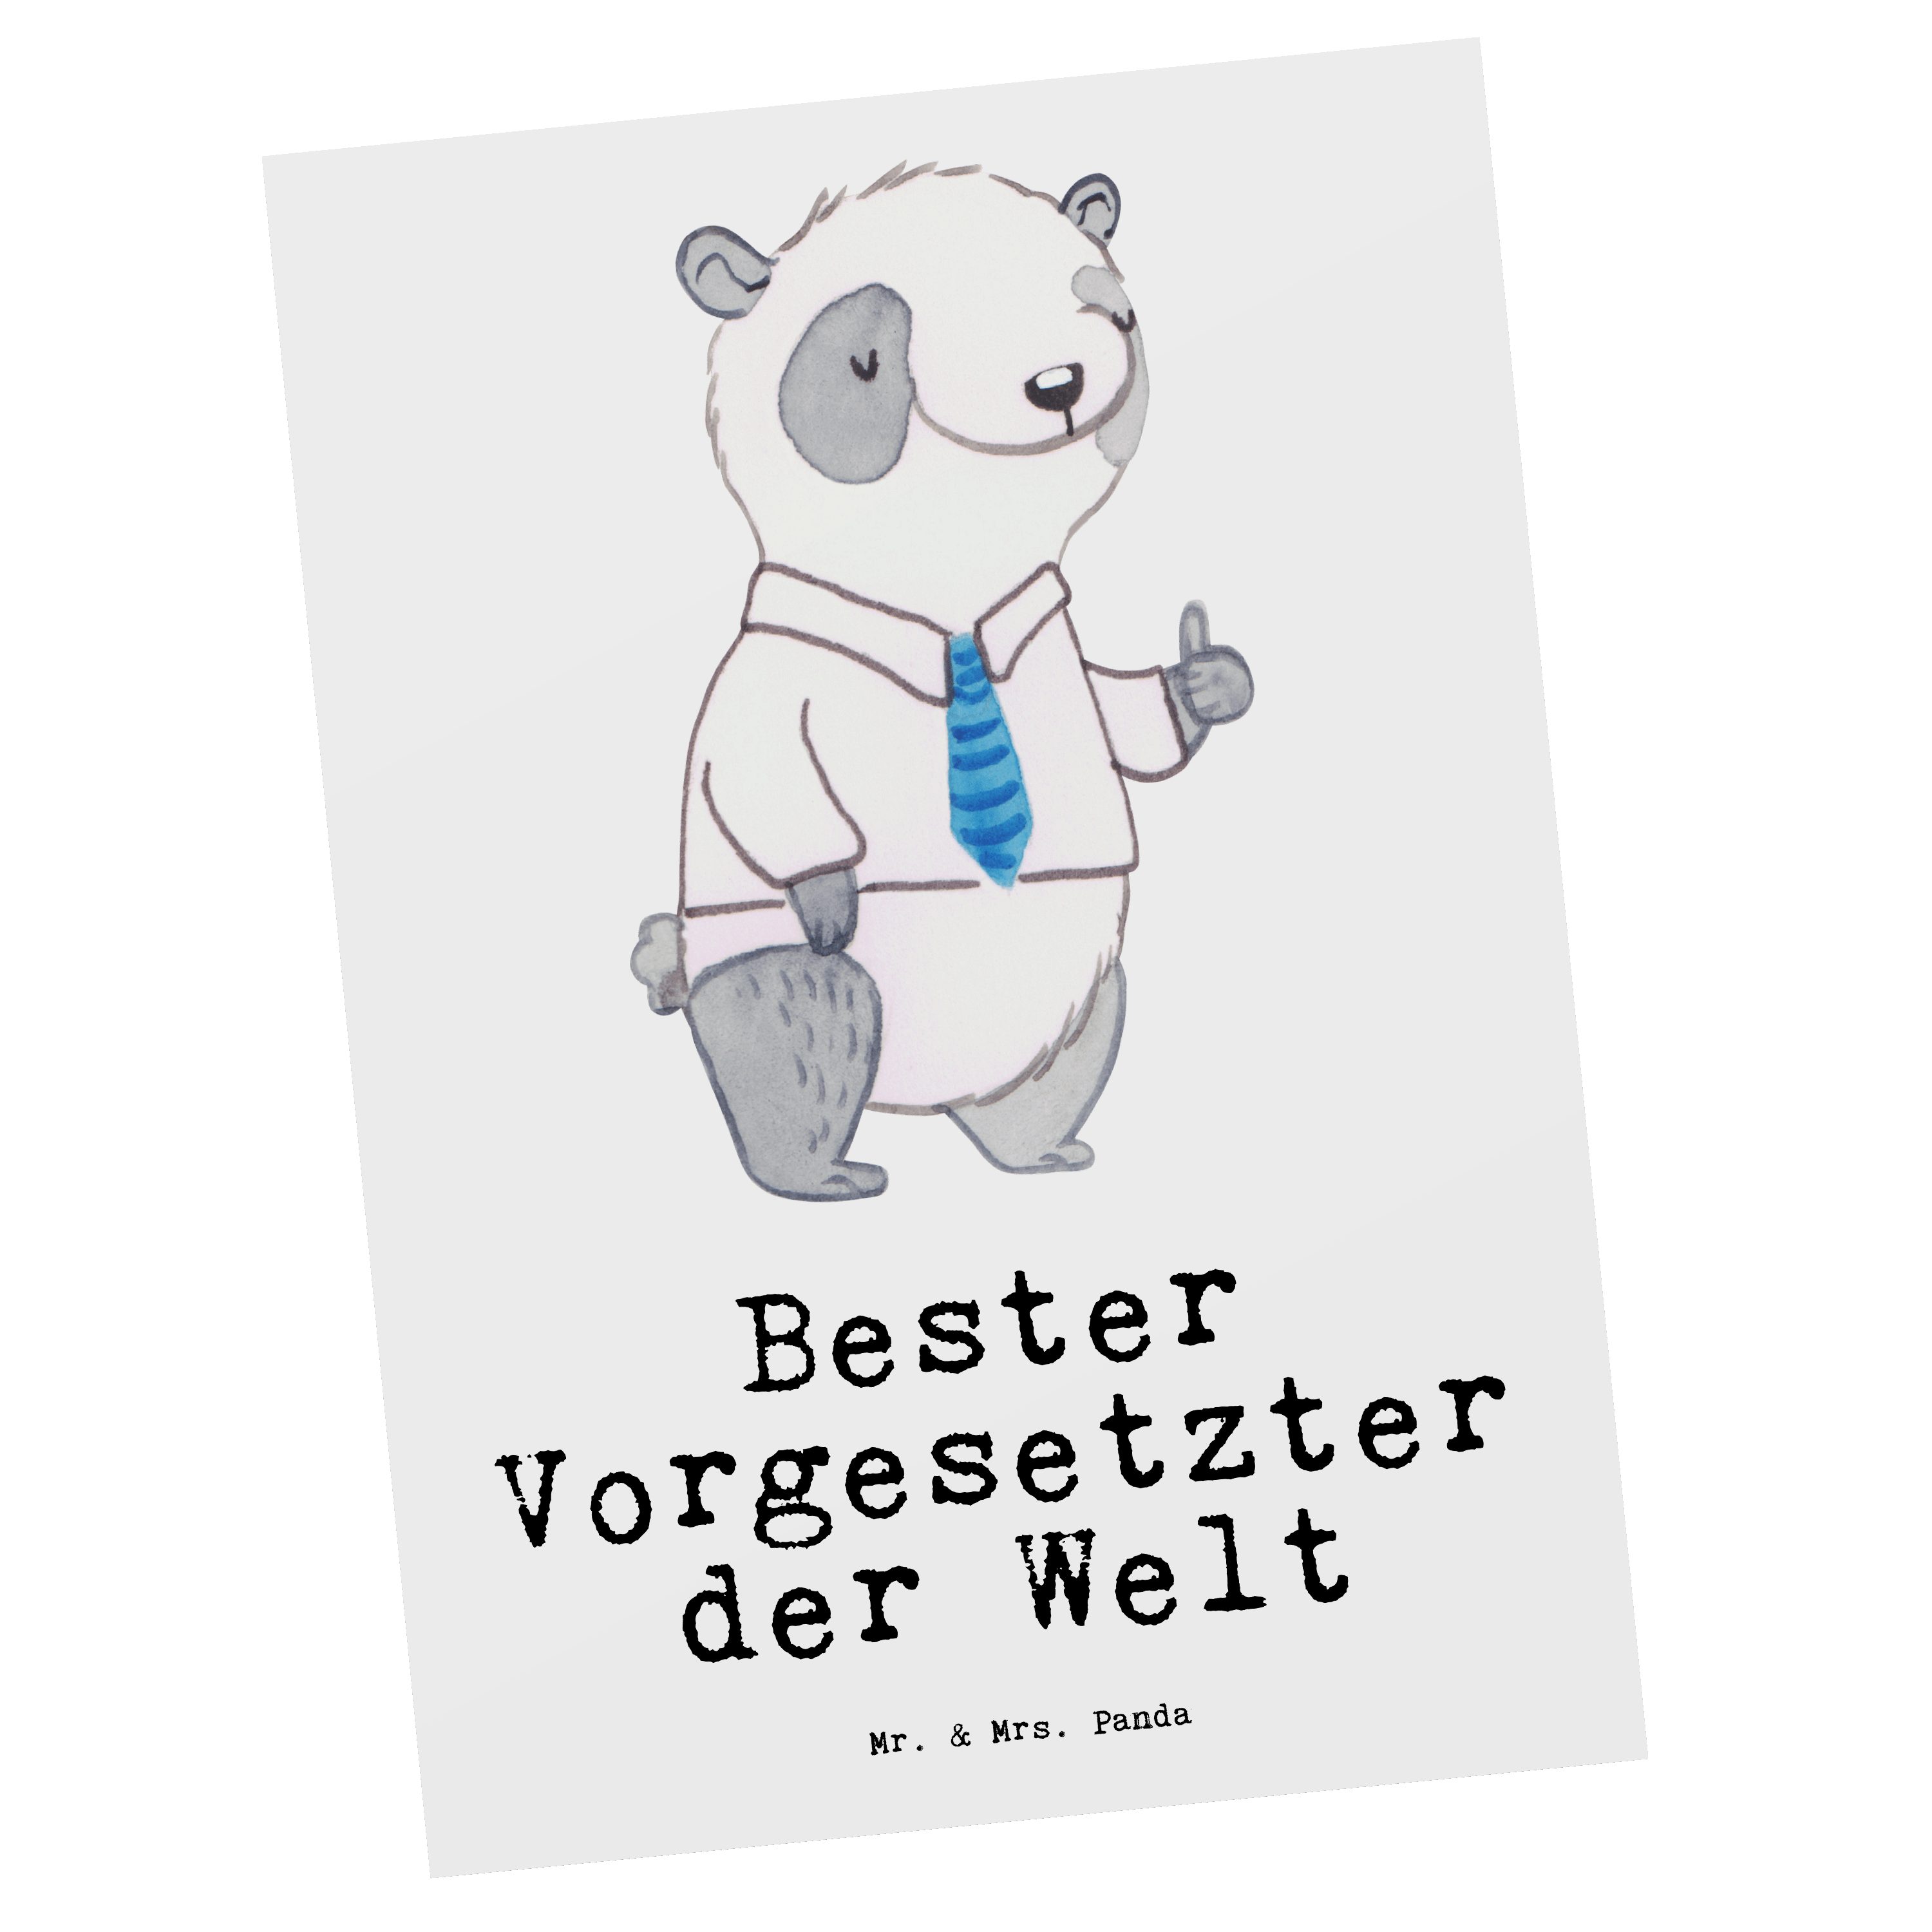 Mr. & Mrs. Panda Postkarte Panda Bester Vorgesetzter der Welt - Weiß - Geschenk, Danke, für, Bedanken, Einladung, Arbeitgeber, Geschenkkarte, Arbeit, Ansichtskarte, Grußkarte